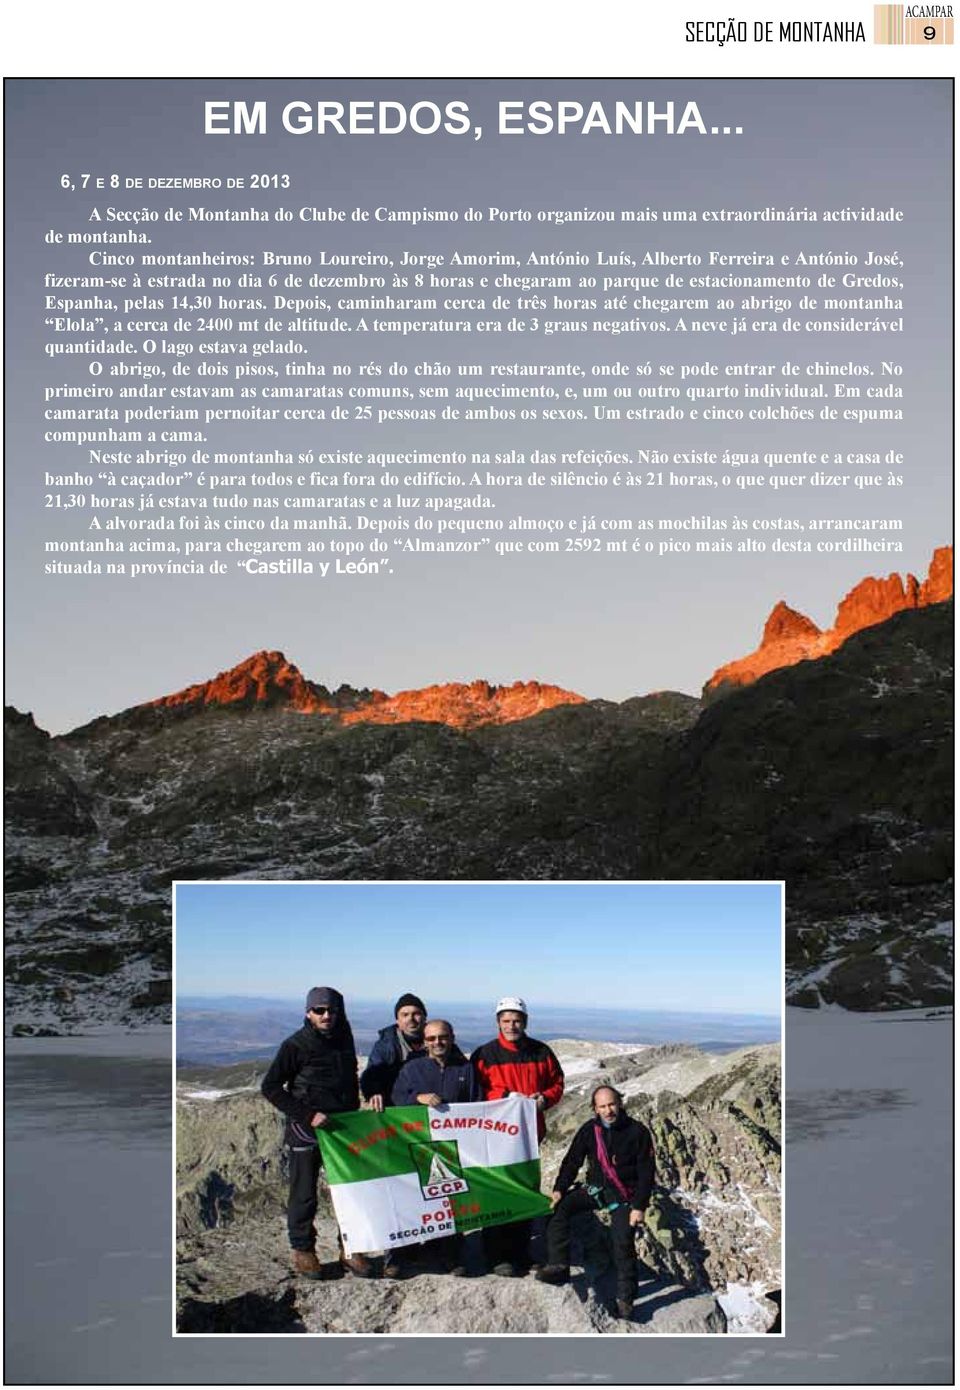 Espanha, pelas 14,30 horas. Depois, caminharam cerca de três horas até chegarem ao abrigo de montanha Elola, a cerca de 2400 mt de altitude. A temperatura era de 3 graus negativos.